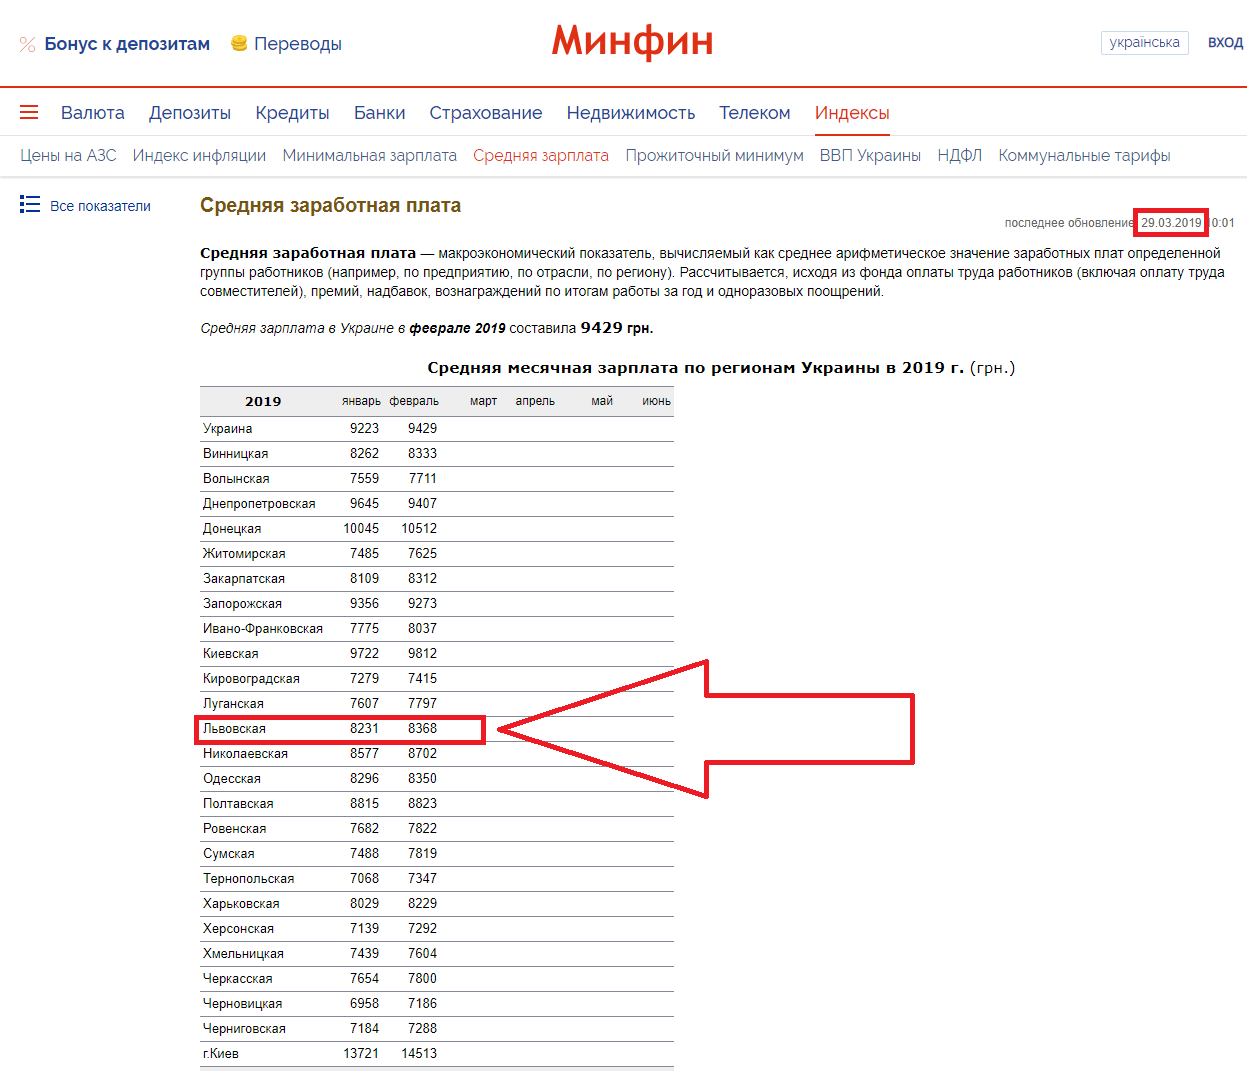 https://index.minfin.com.ua/ua/labour/salary/average/